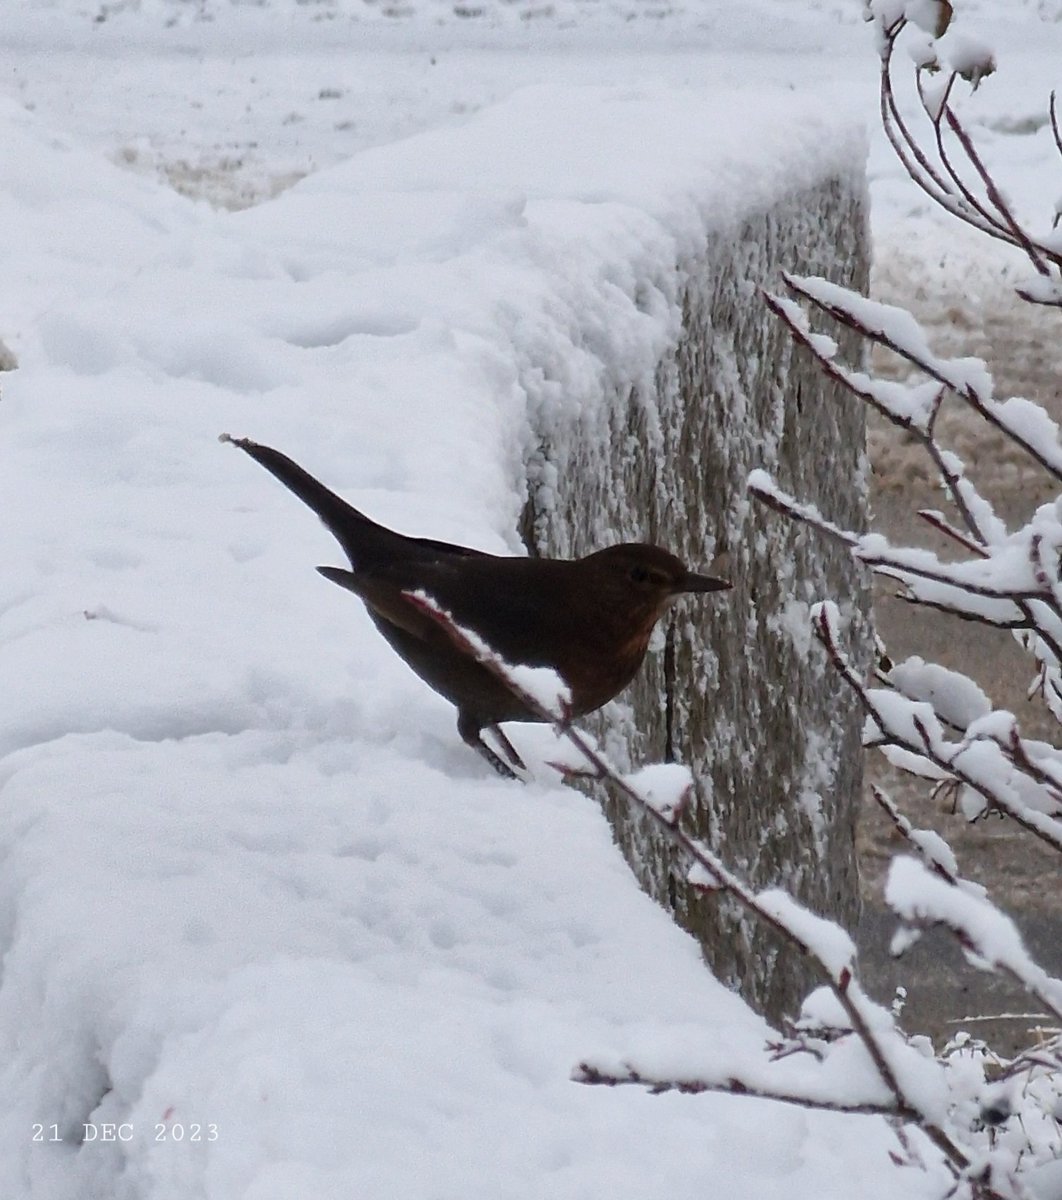 Jackdaw.
#nature #birds #jackdaw #winter #snow #BirdsPhoto #WinterPhoto